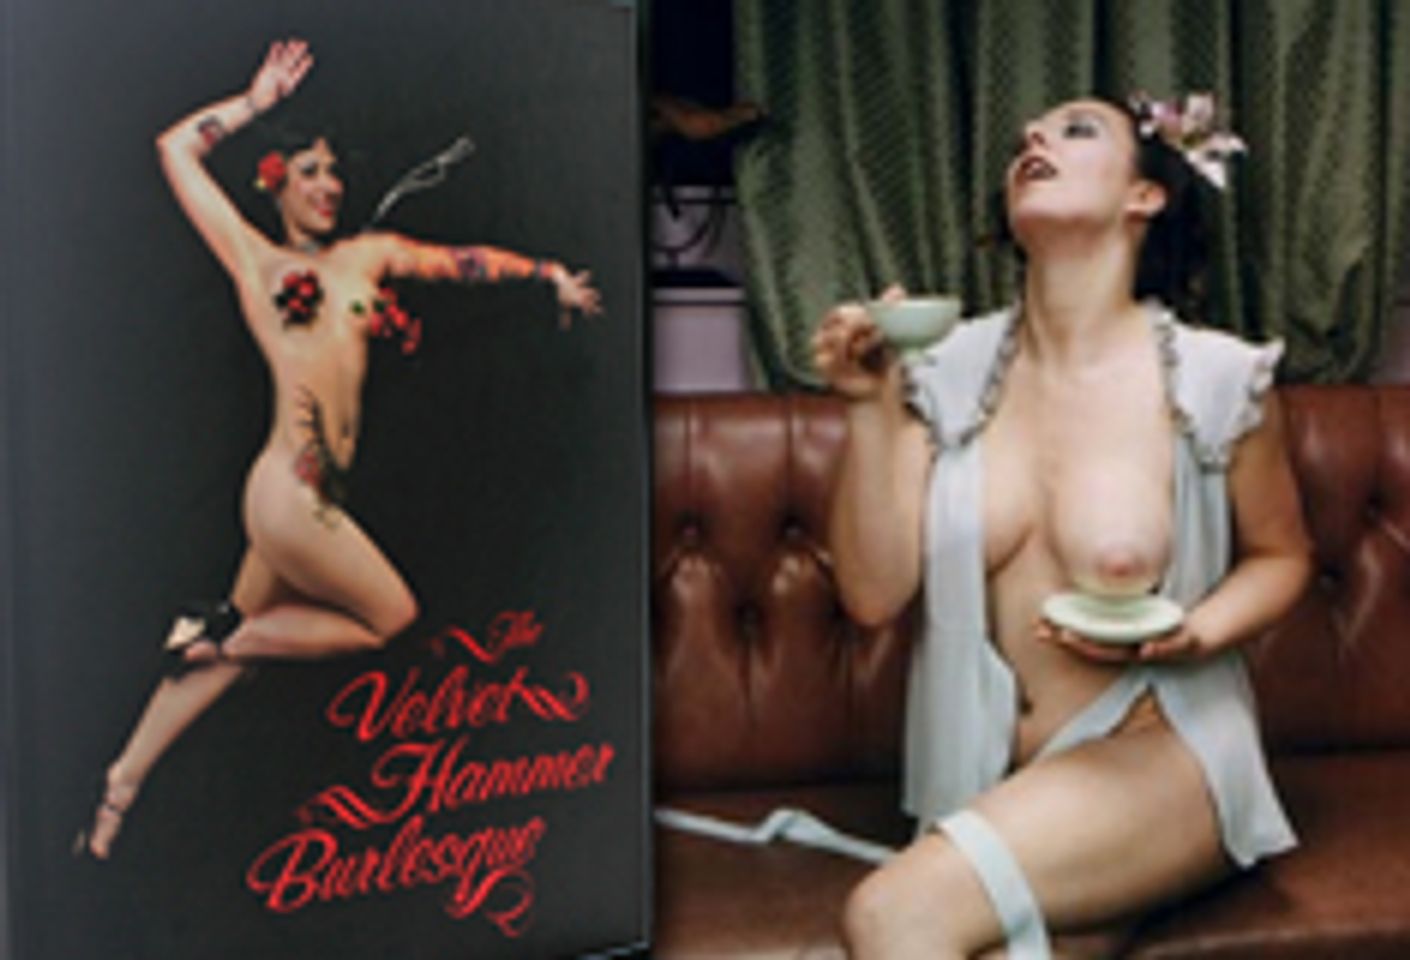 Velvet Hammer Burlesque Salon Set for March 27